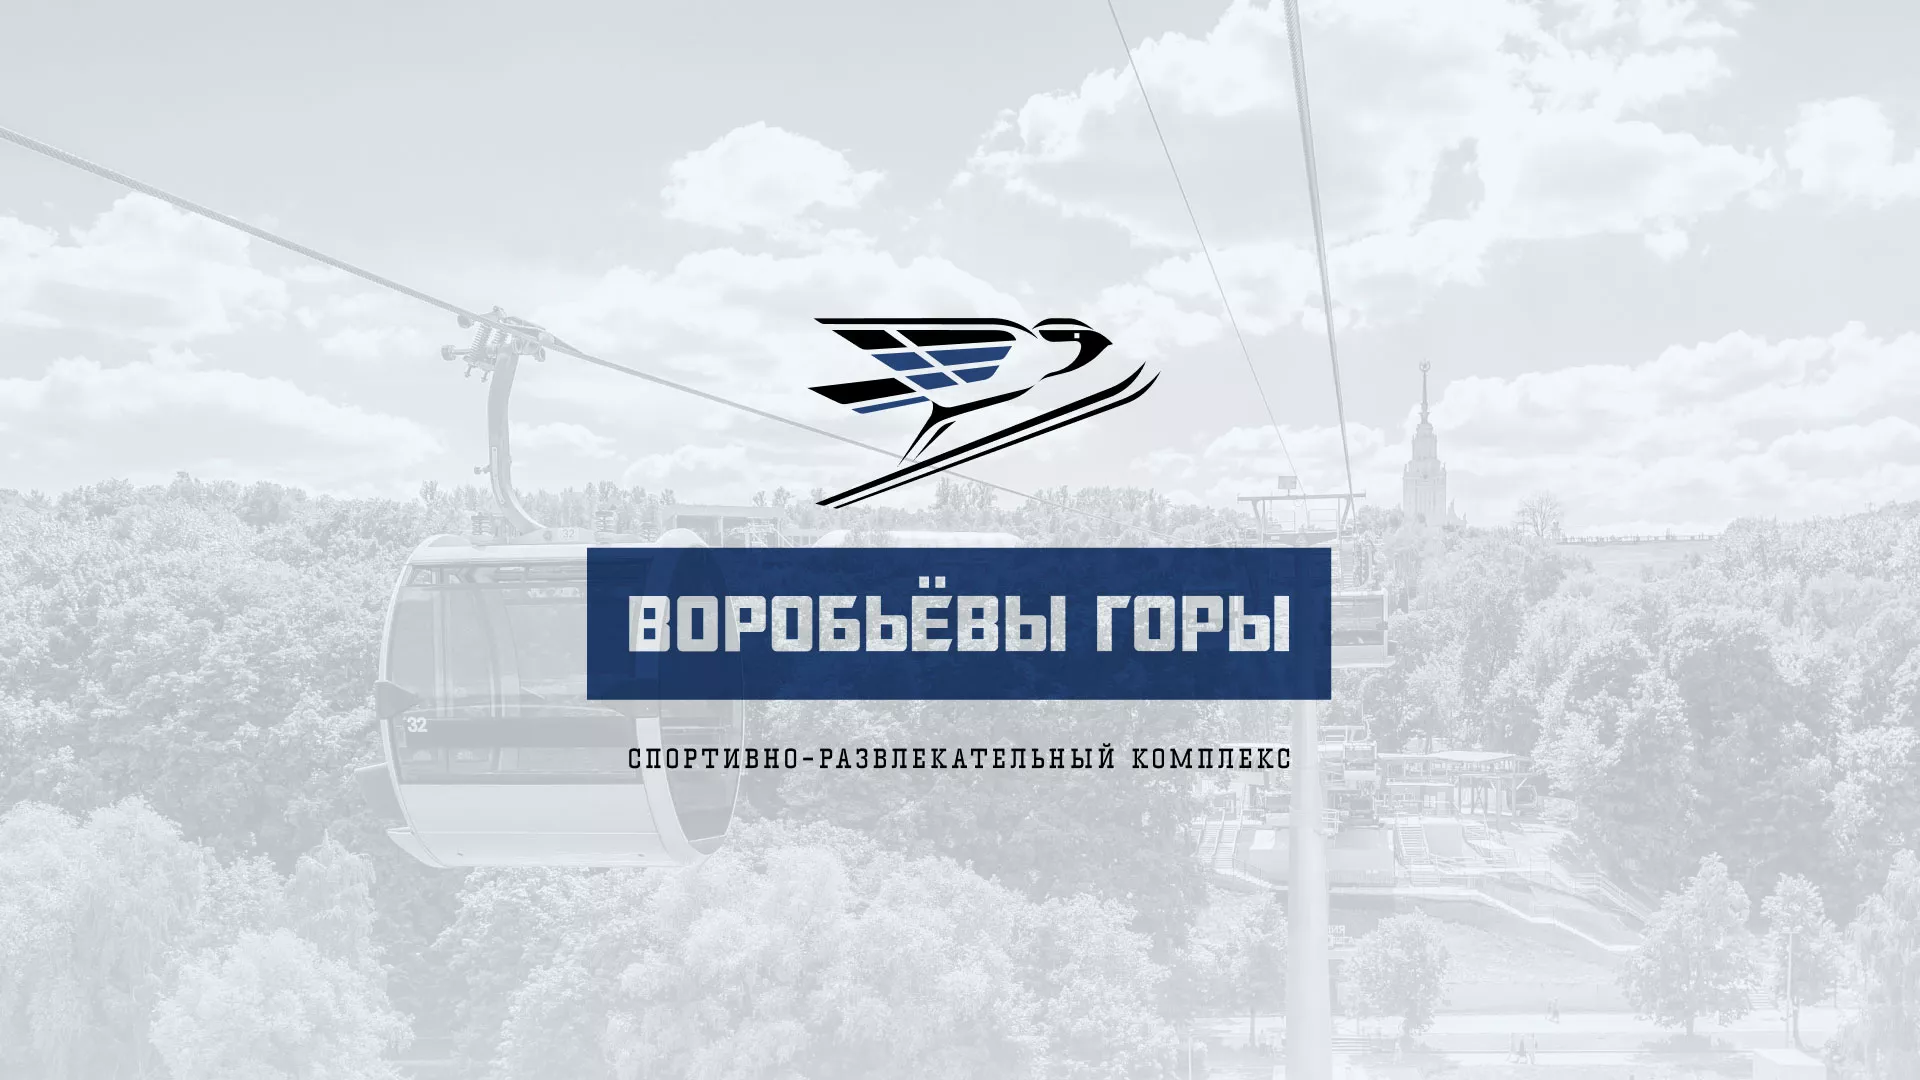 Разработка сайта в Менделеевске для спортивно-развлекательного комплекса «Воробьёвы горы»